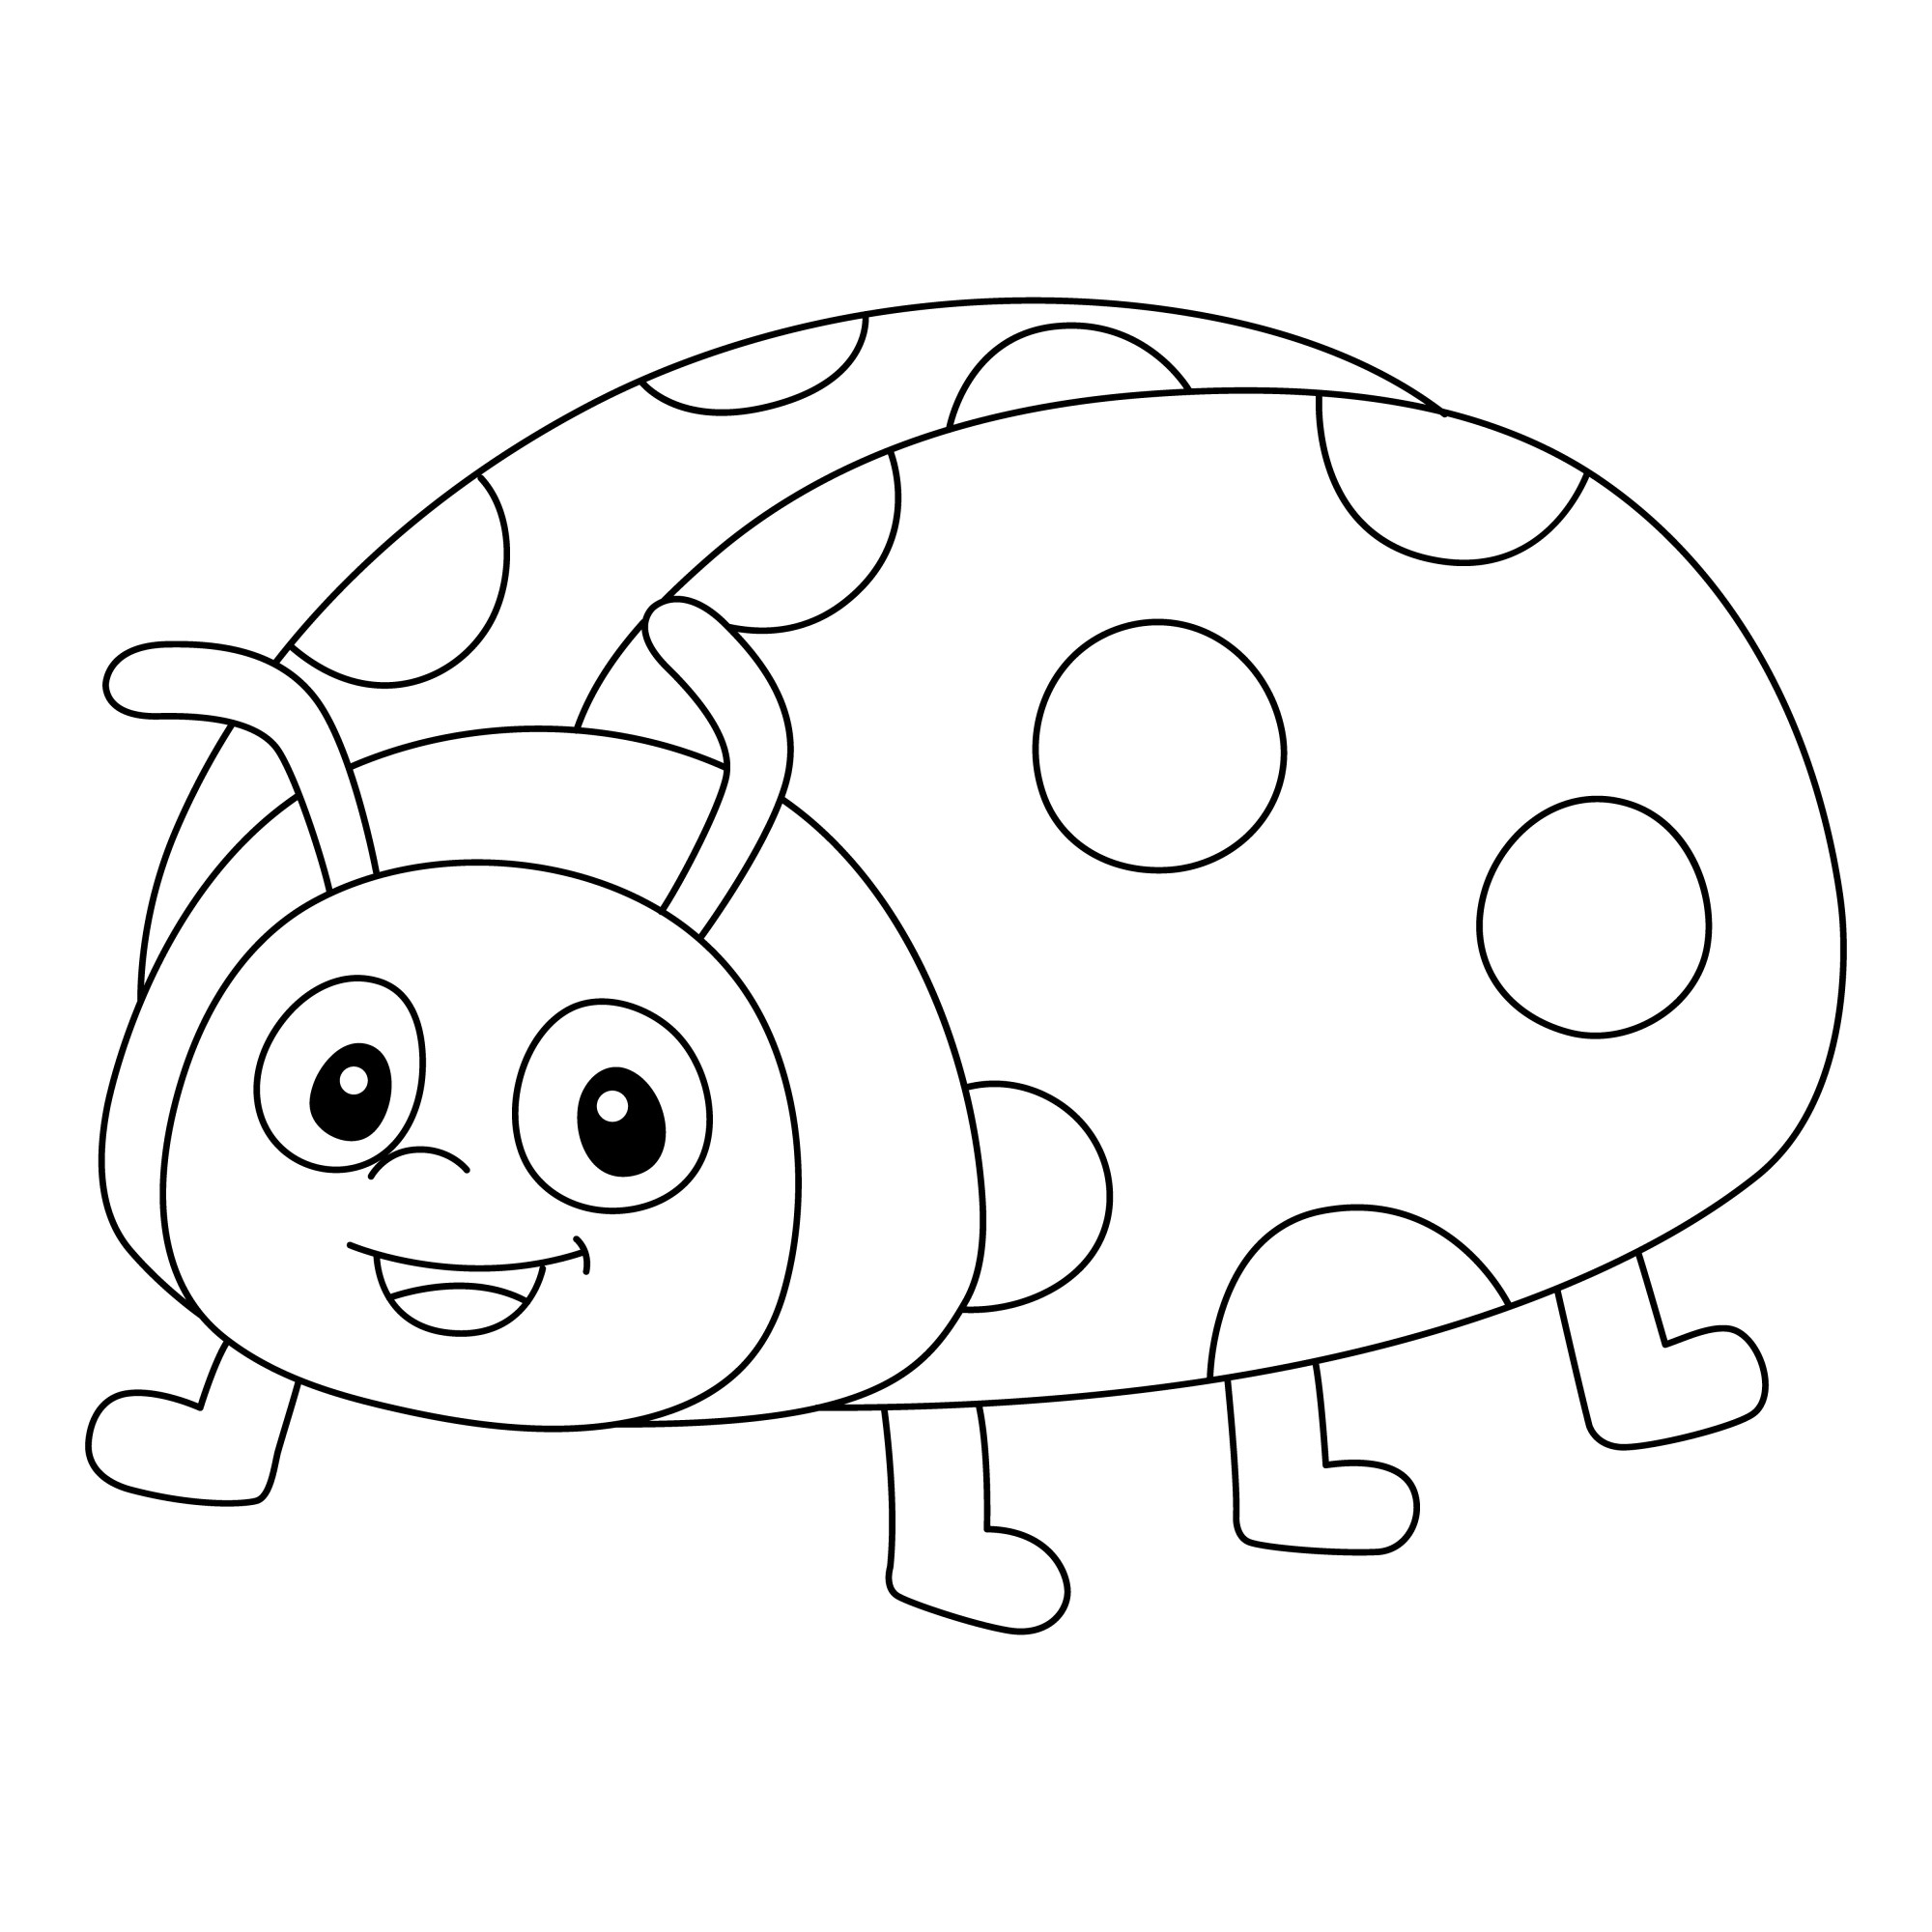 Раскраска для детей: насекомое божья коровка